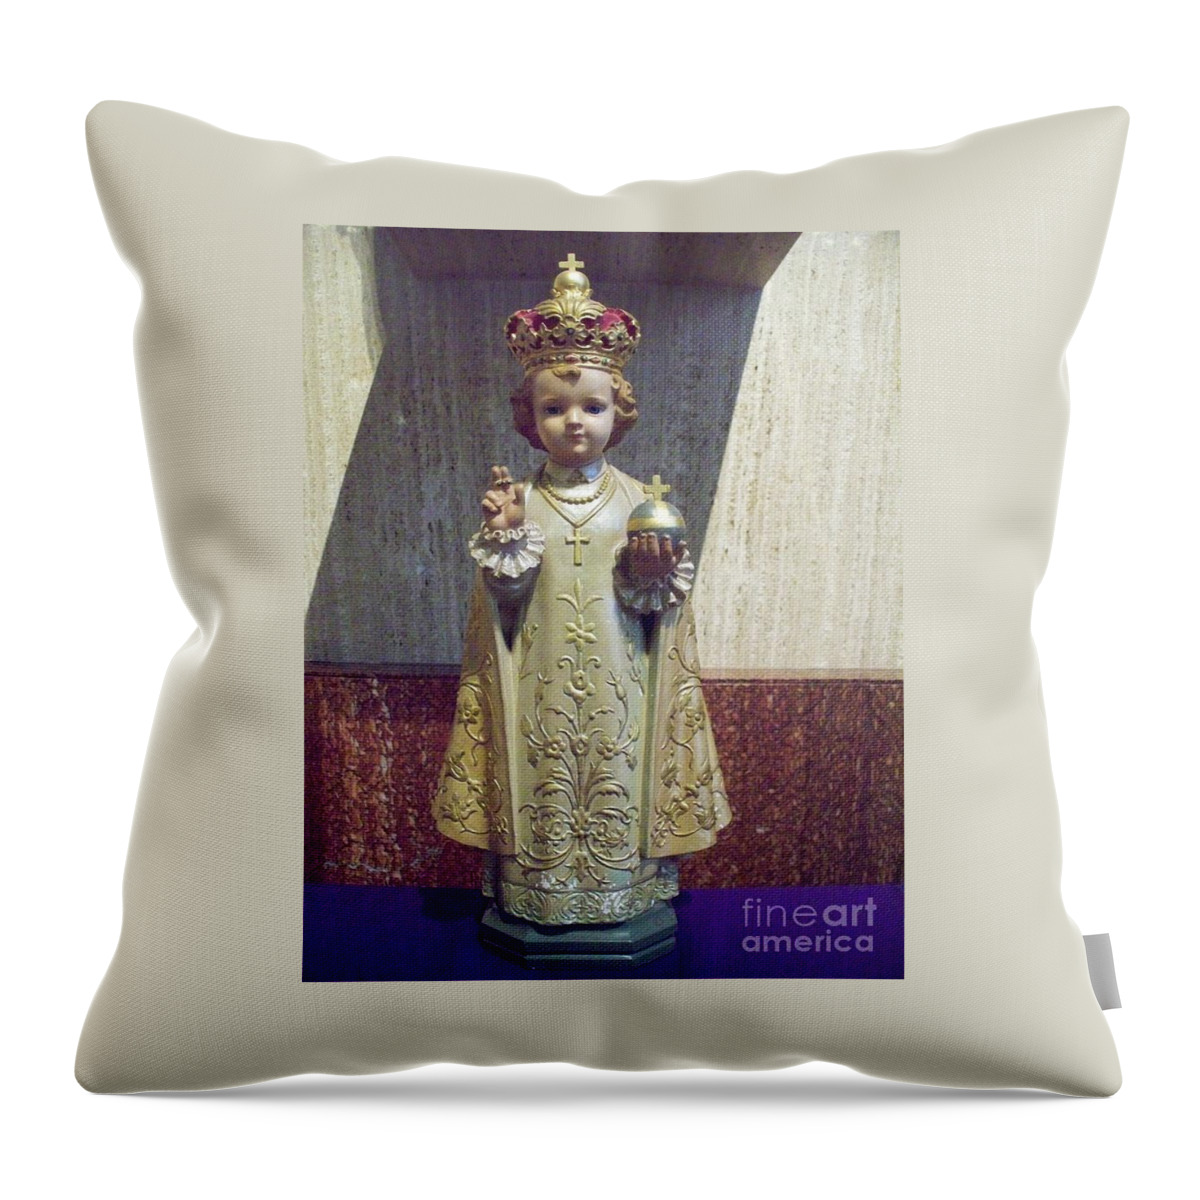  Precious Little King Throw Pillow featuring the photograph Precious Little King by Seaux-N-Seau Soileau